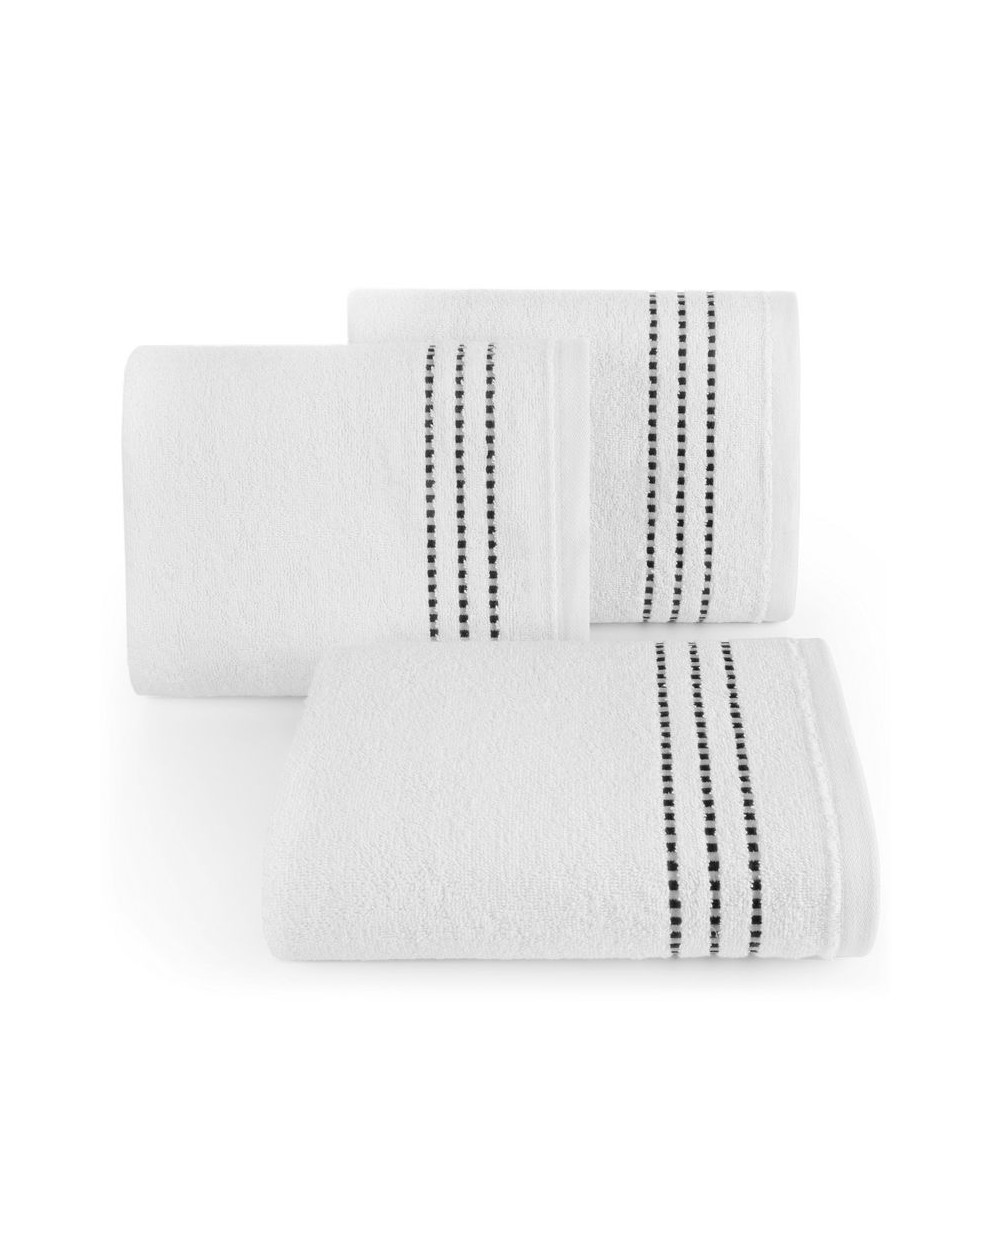 Ręcznik bawełna 50x90 Fiore biały